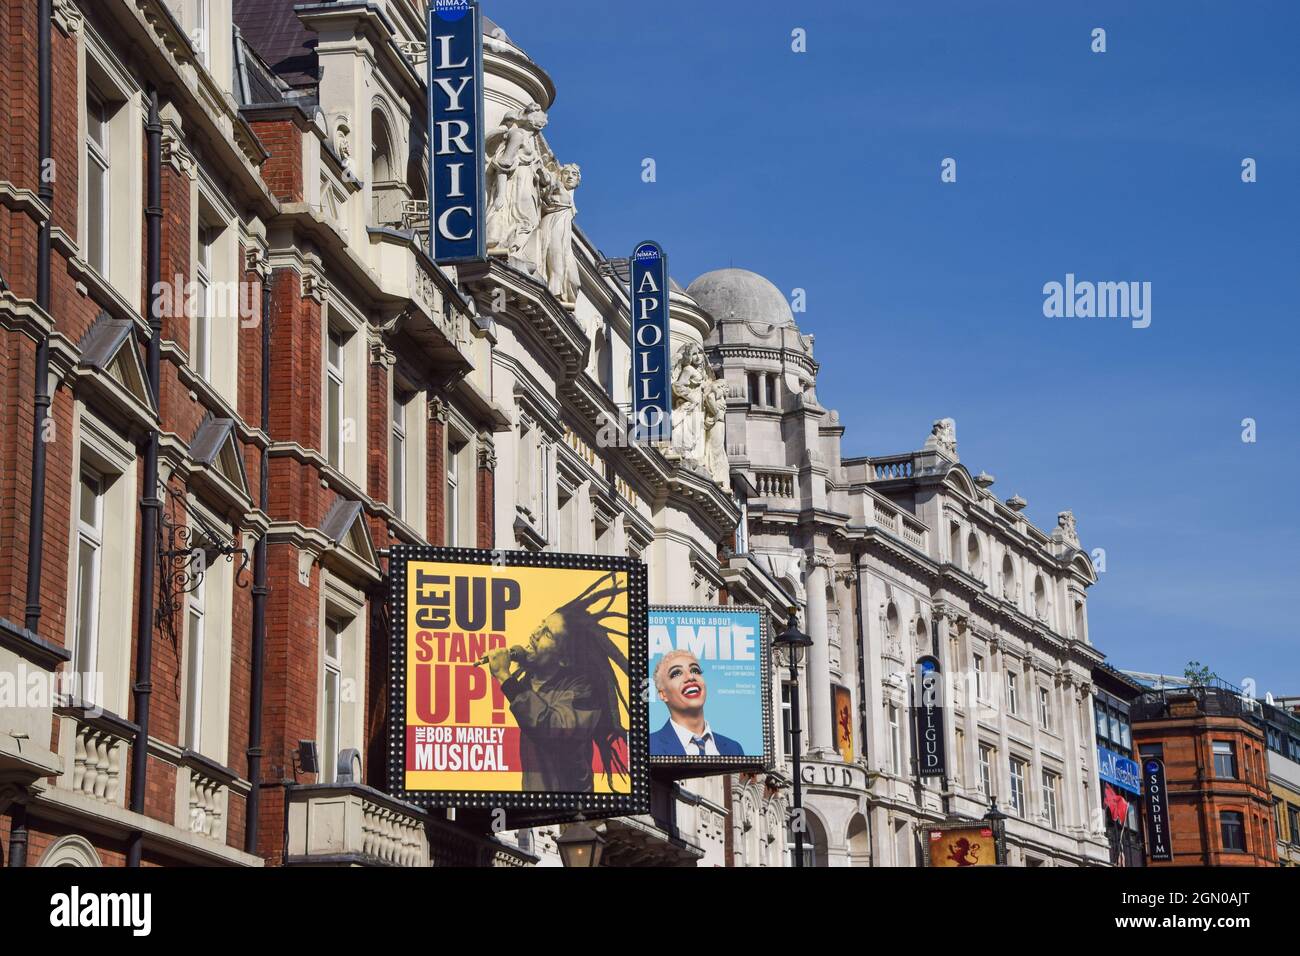 Londres, UK.21st septembre 2021. Théâtres sur Shaftesbury Avenue, West End, vue de jour. Crédit : Vuk Valcic/Alamy Banque D'Images